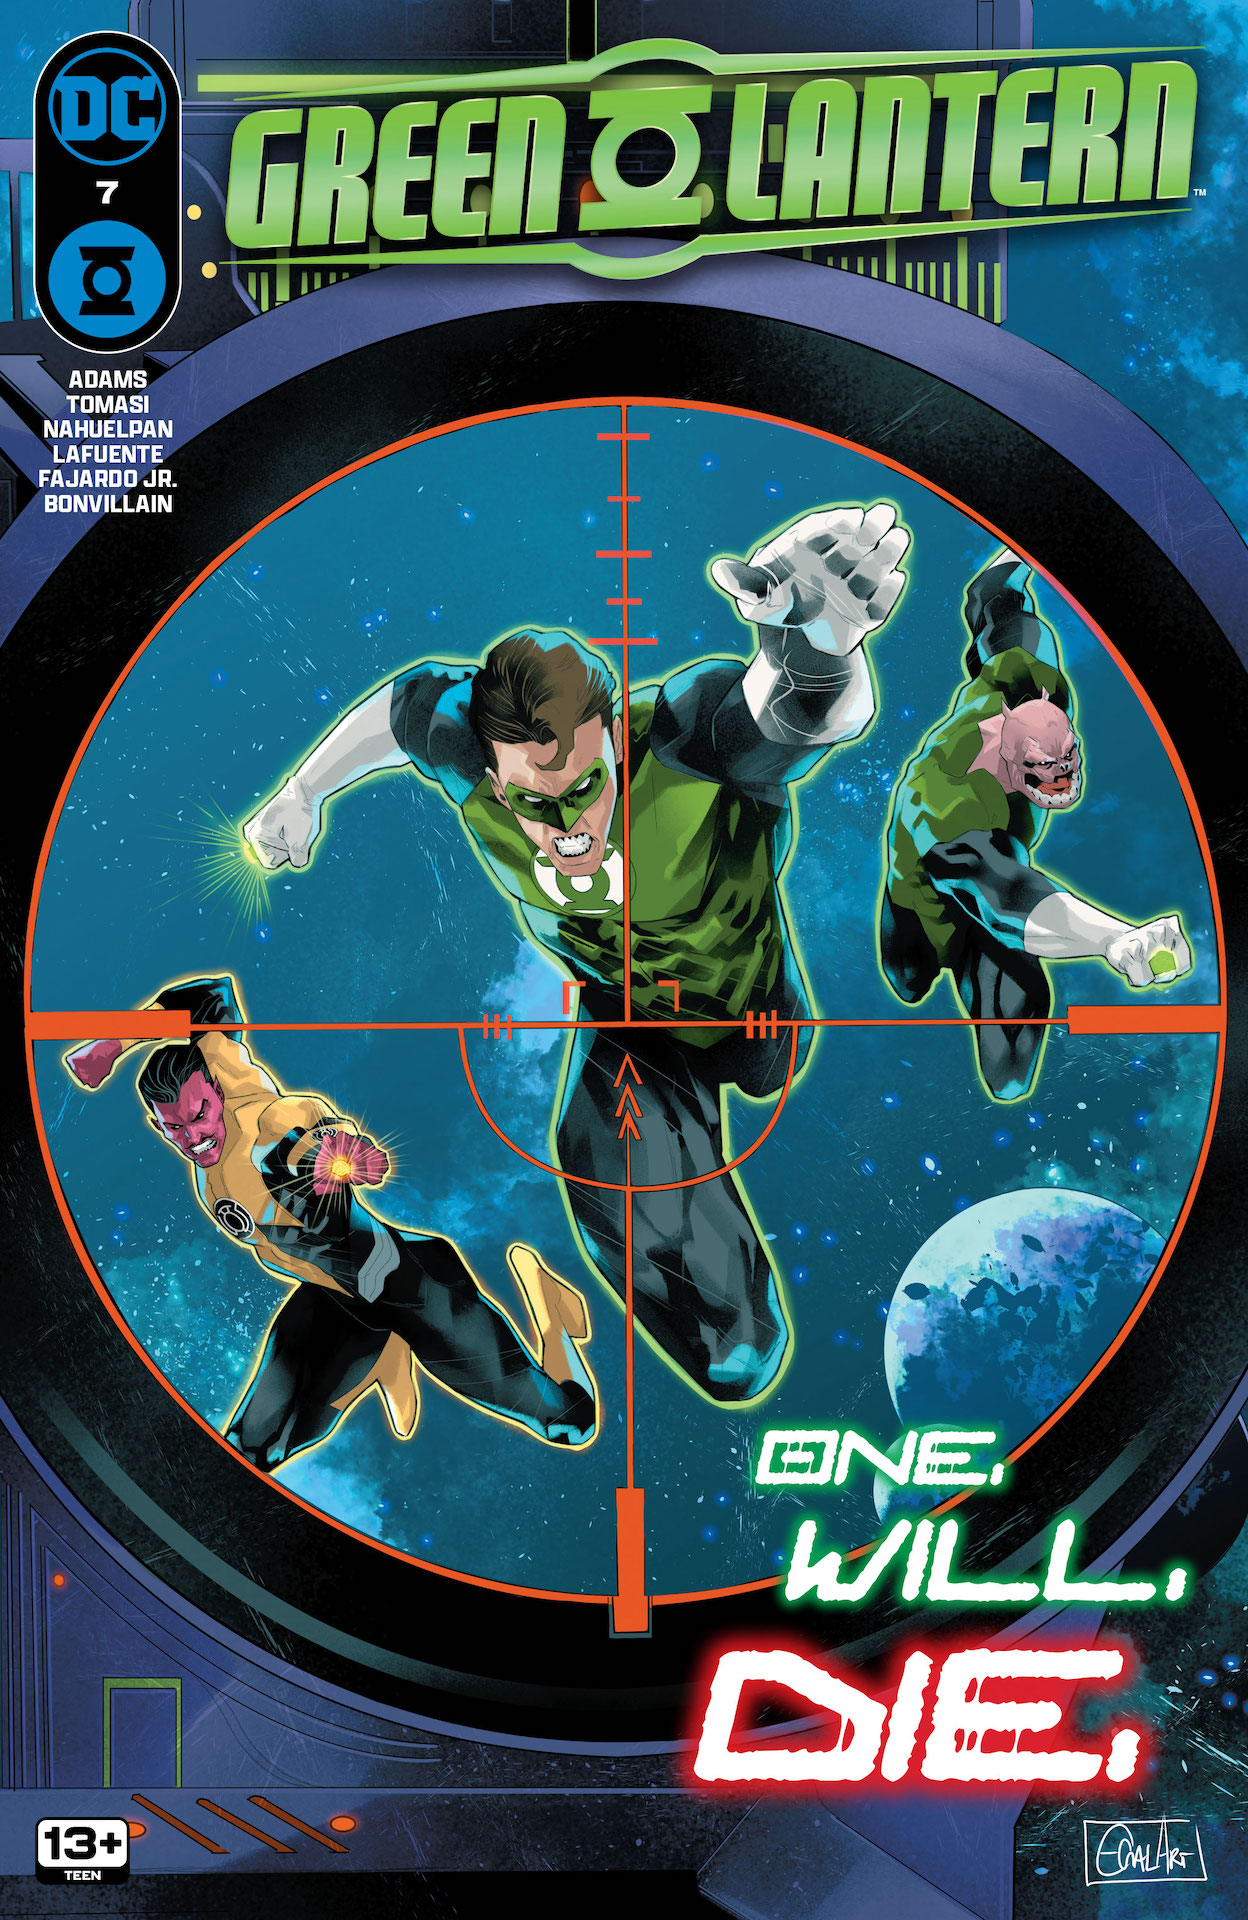 DC Preview: Green Lantern #7